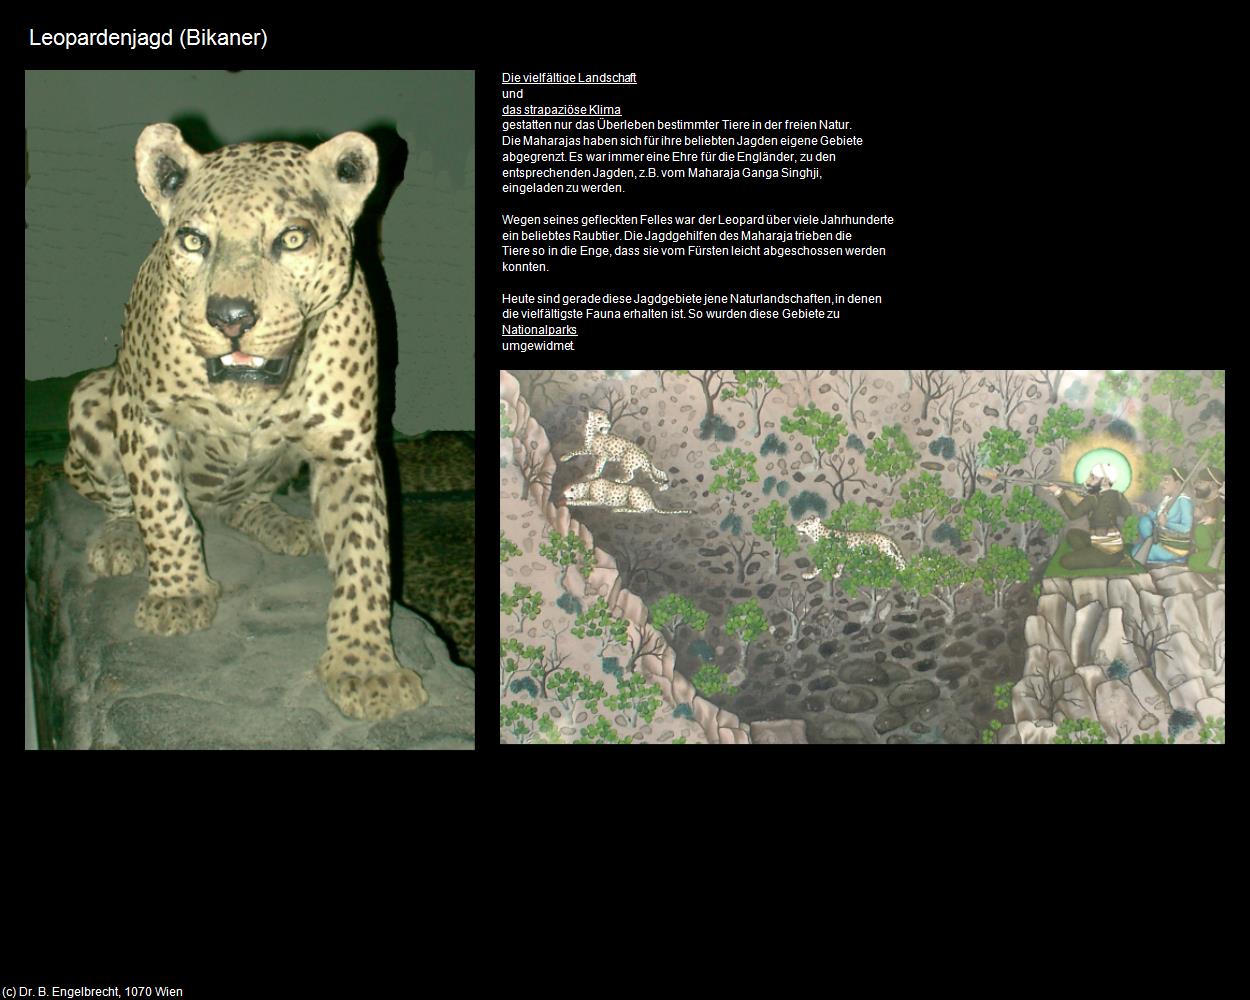 Leopardenjagd (Bikaner) in Rajasthan - das Land der Könige(c)B.Engelbrecht